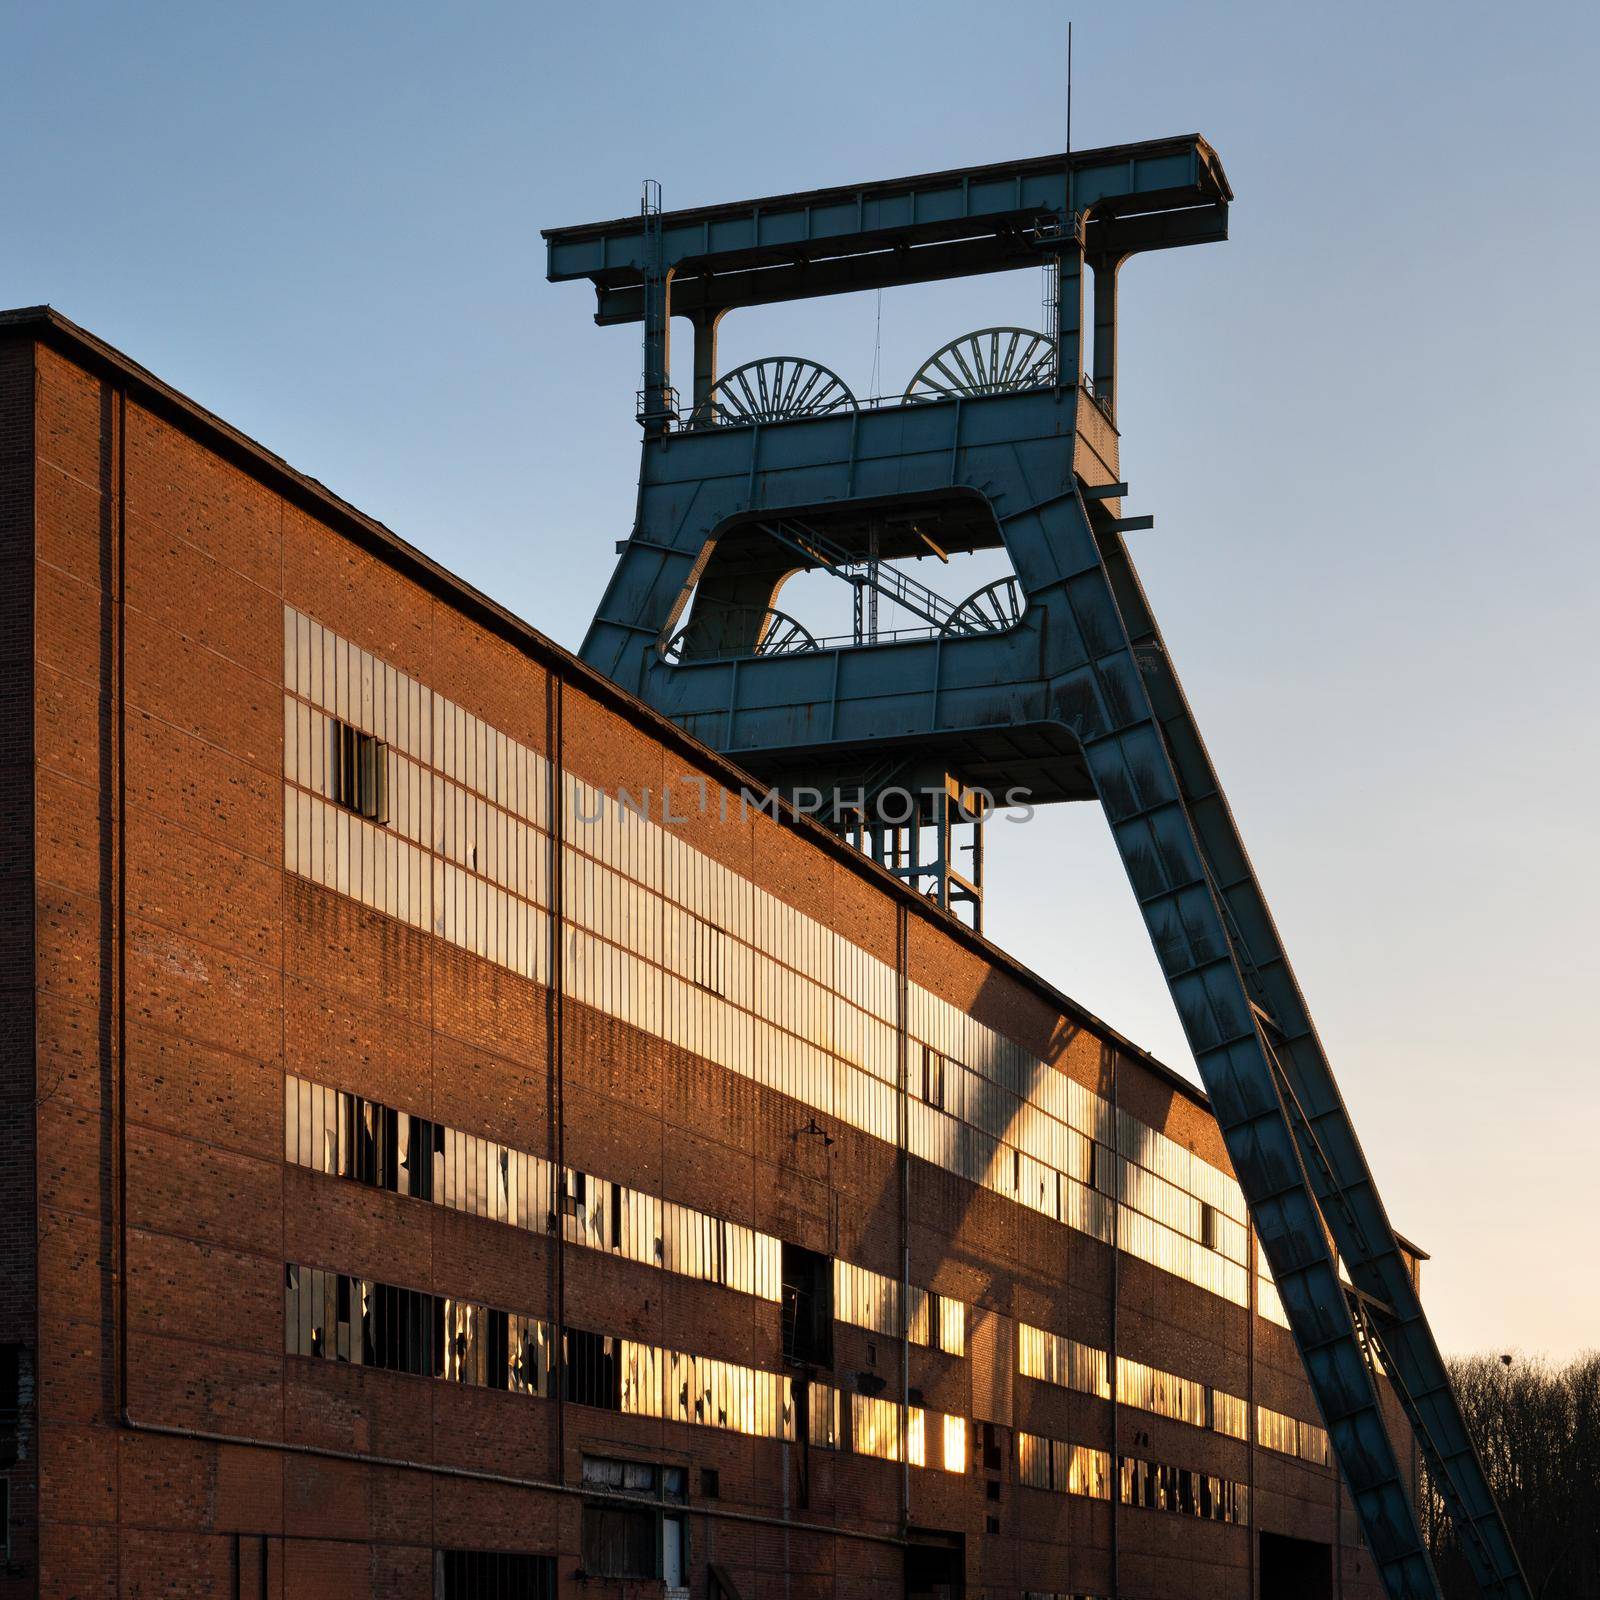 Ewald Pit, industrial heritage of Ruhr metropolis in Herten, Germany